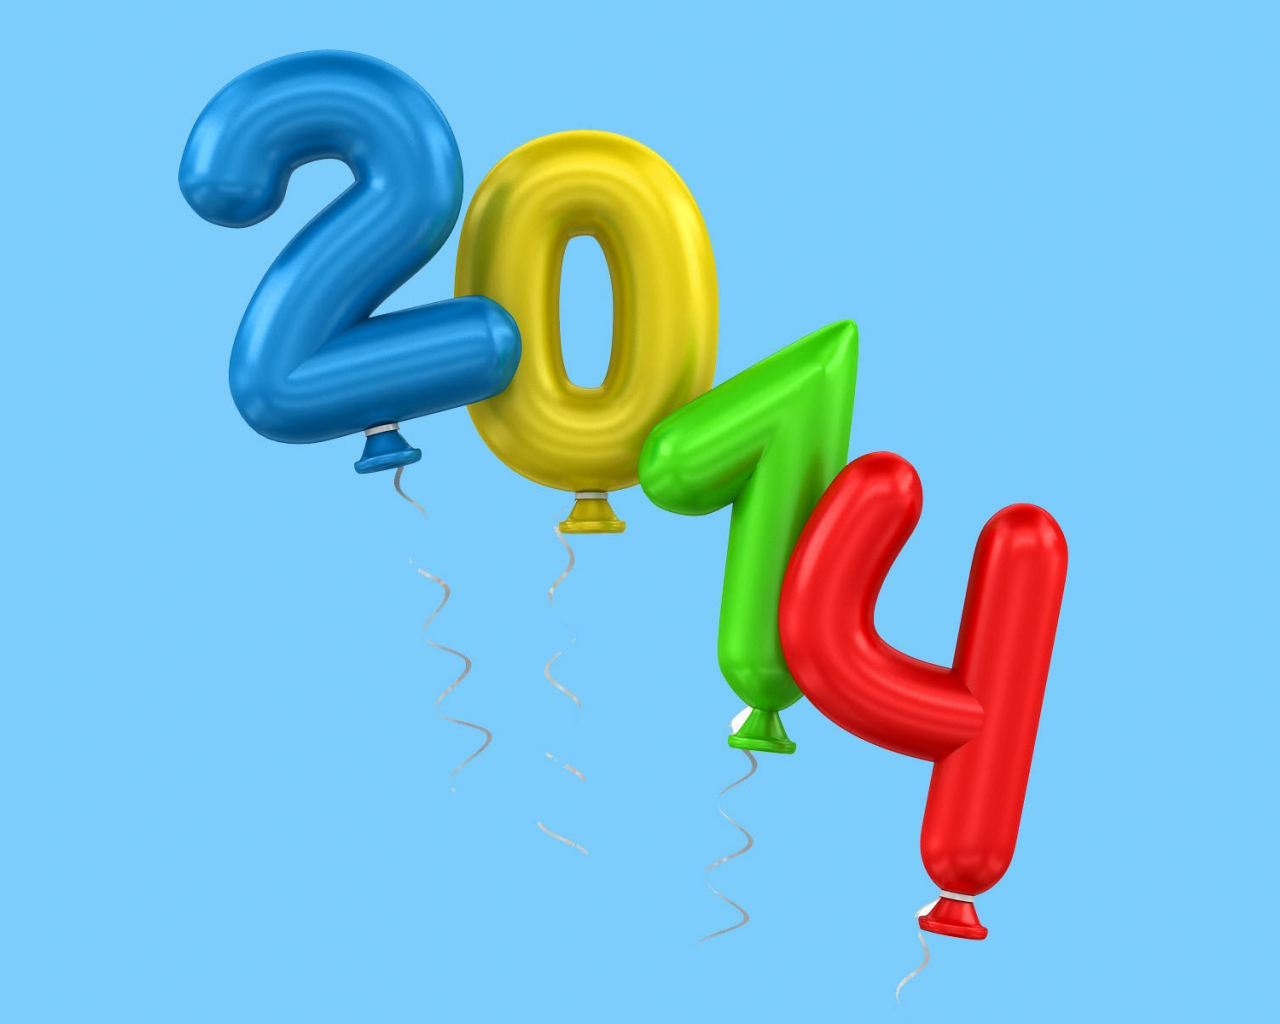  цифры, воздушные шары, 2014, праздник, новый год